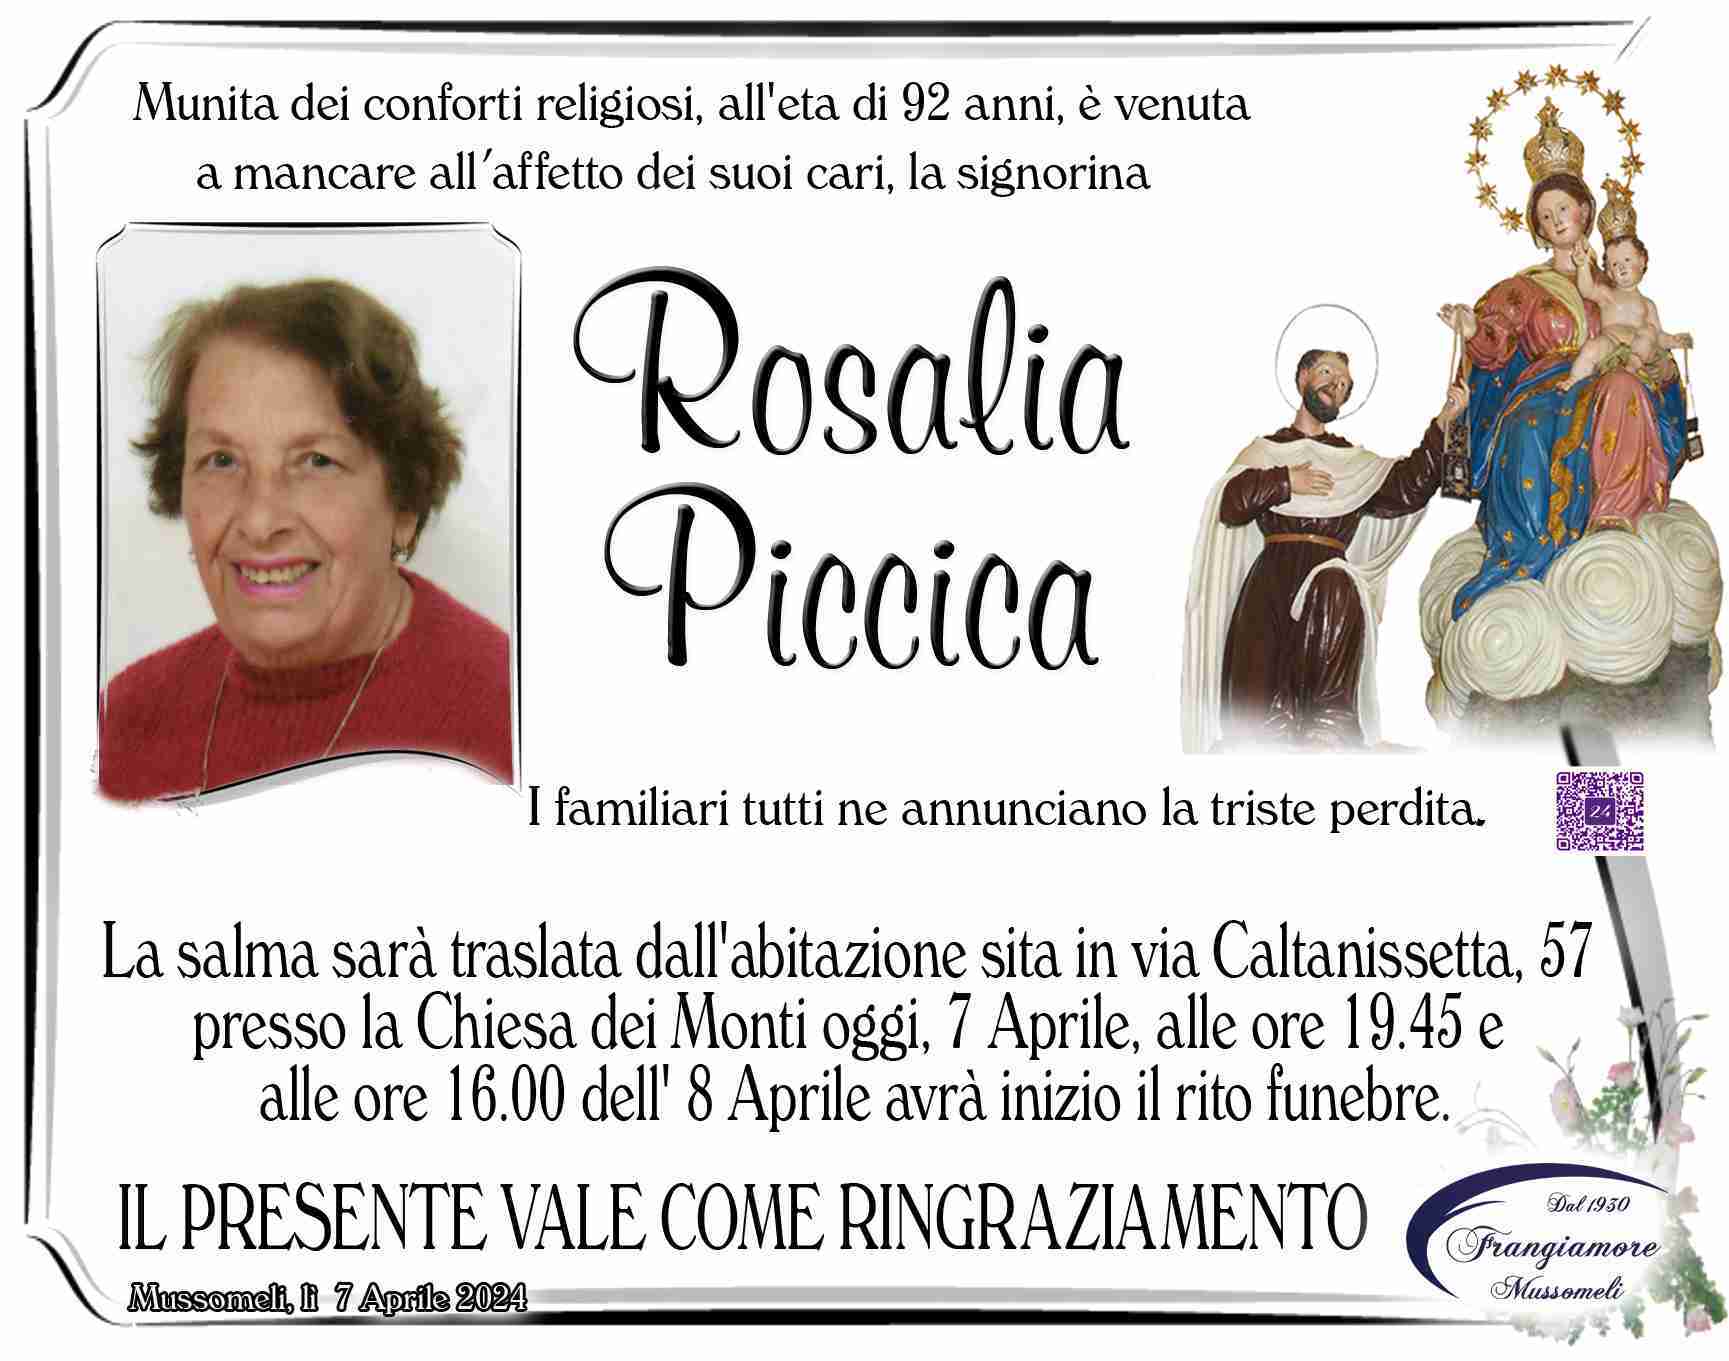 Rosalia Piccica